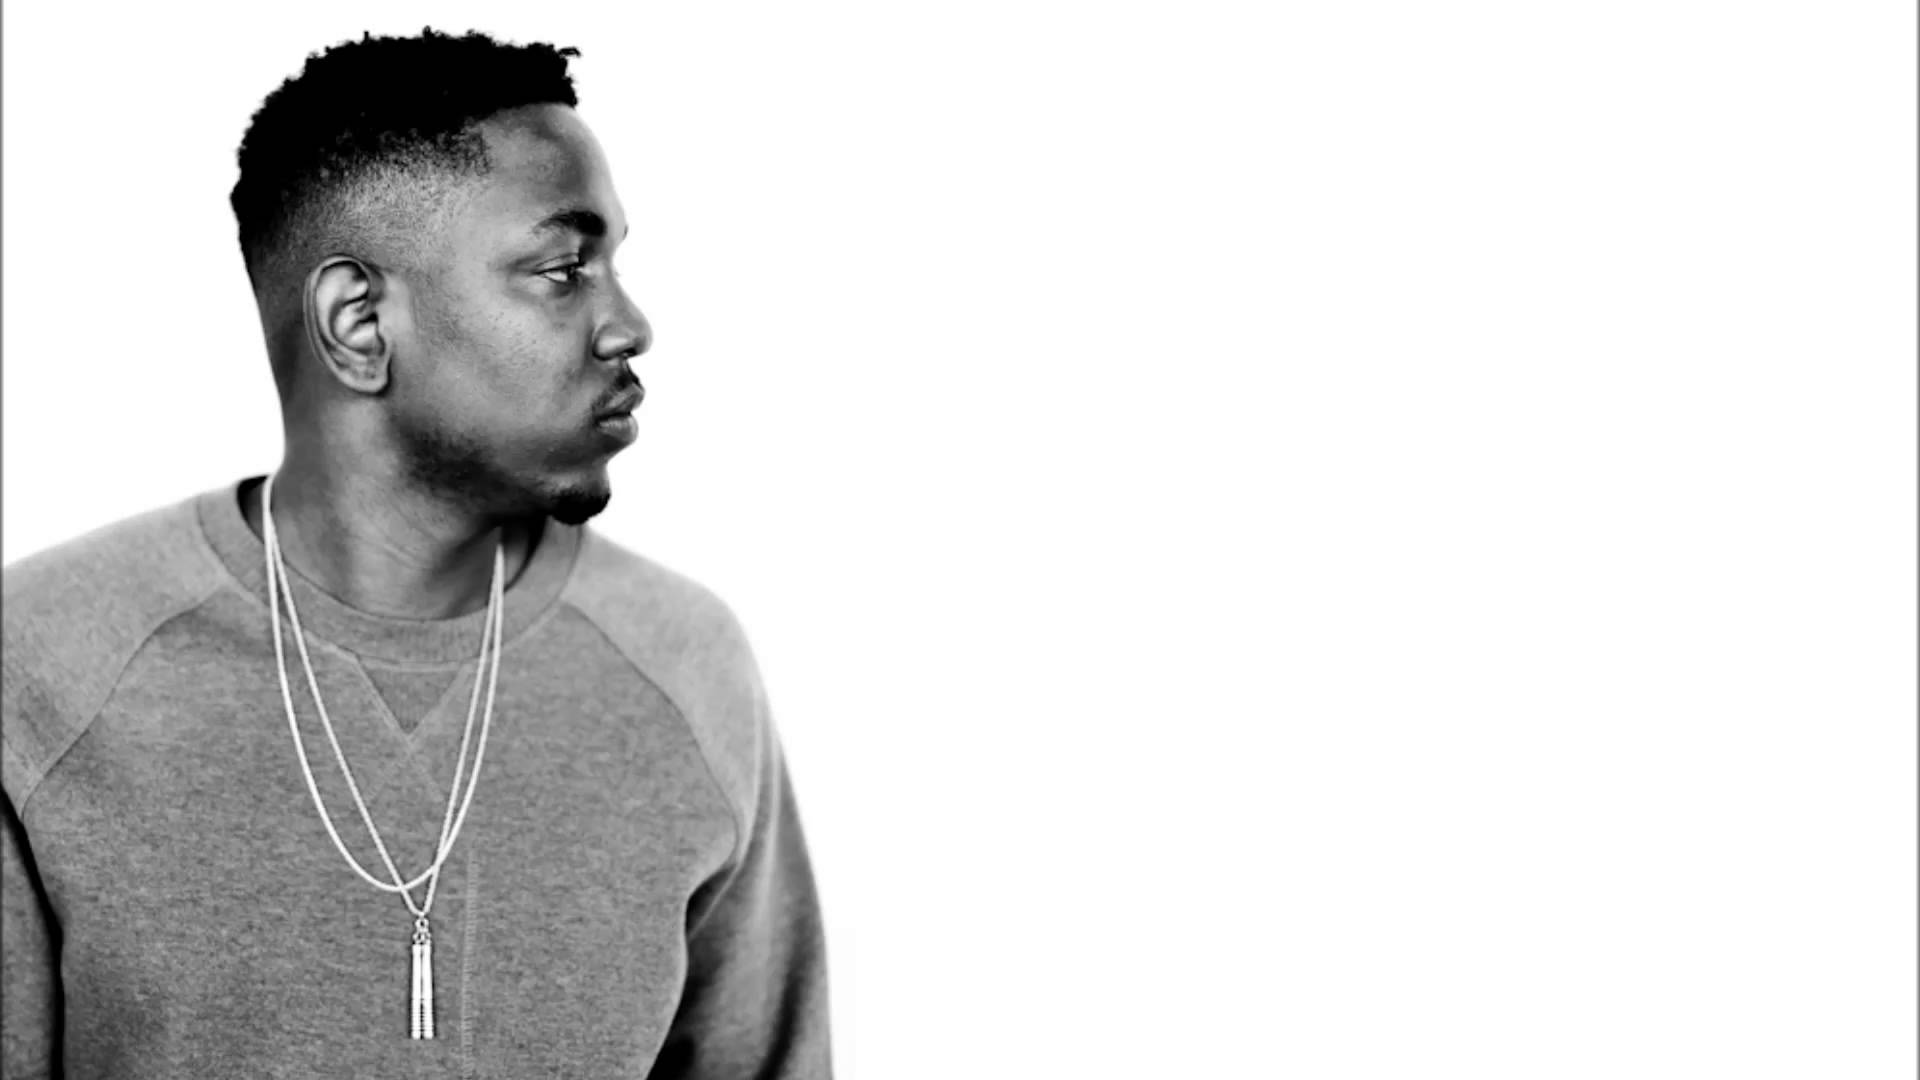 Kendrick Lamar HD Desktop Wallpaper Free Kendrick Lamar HD